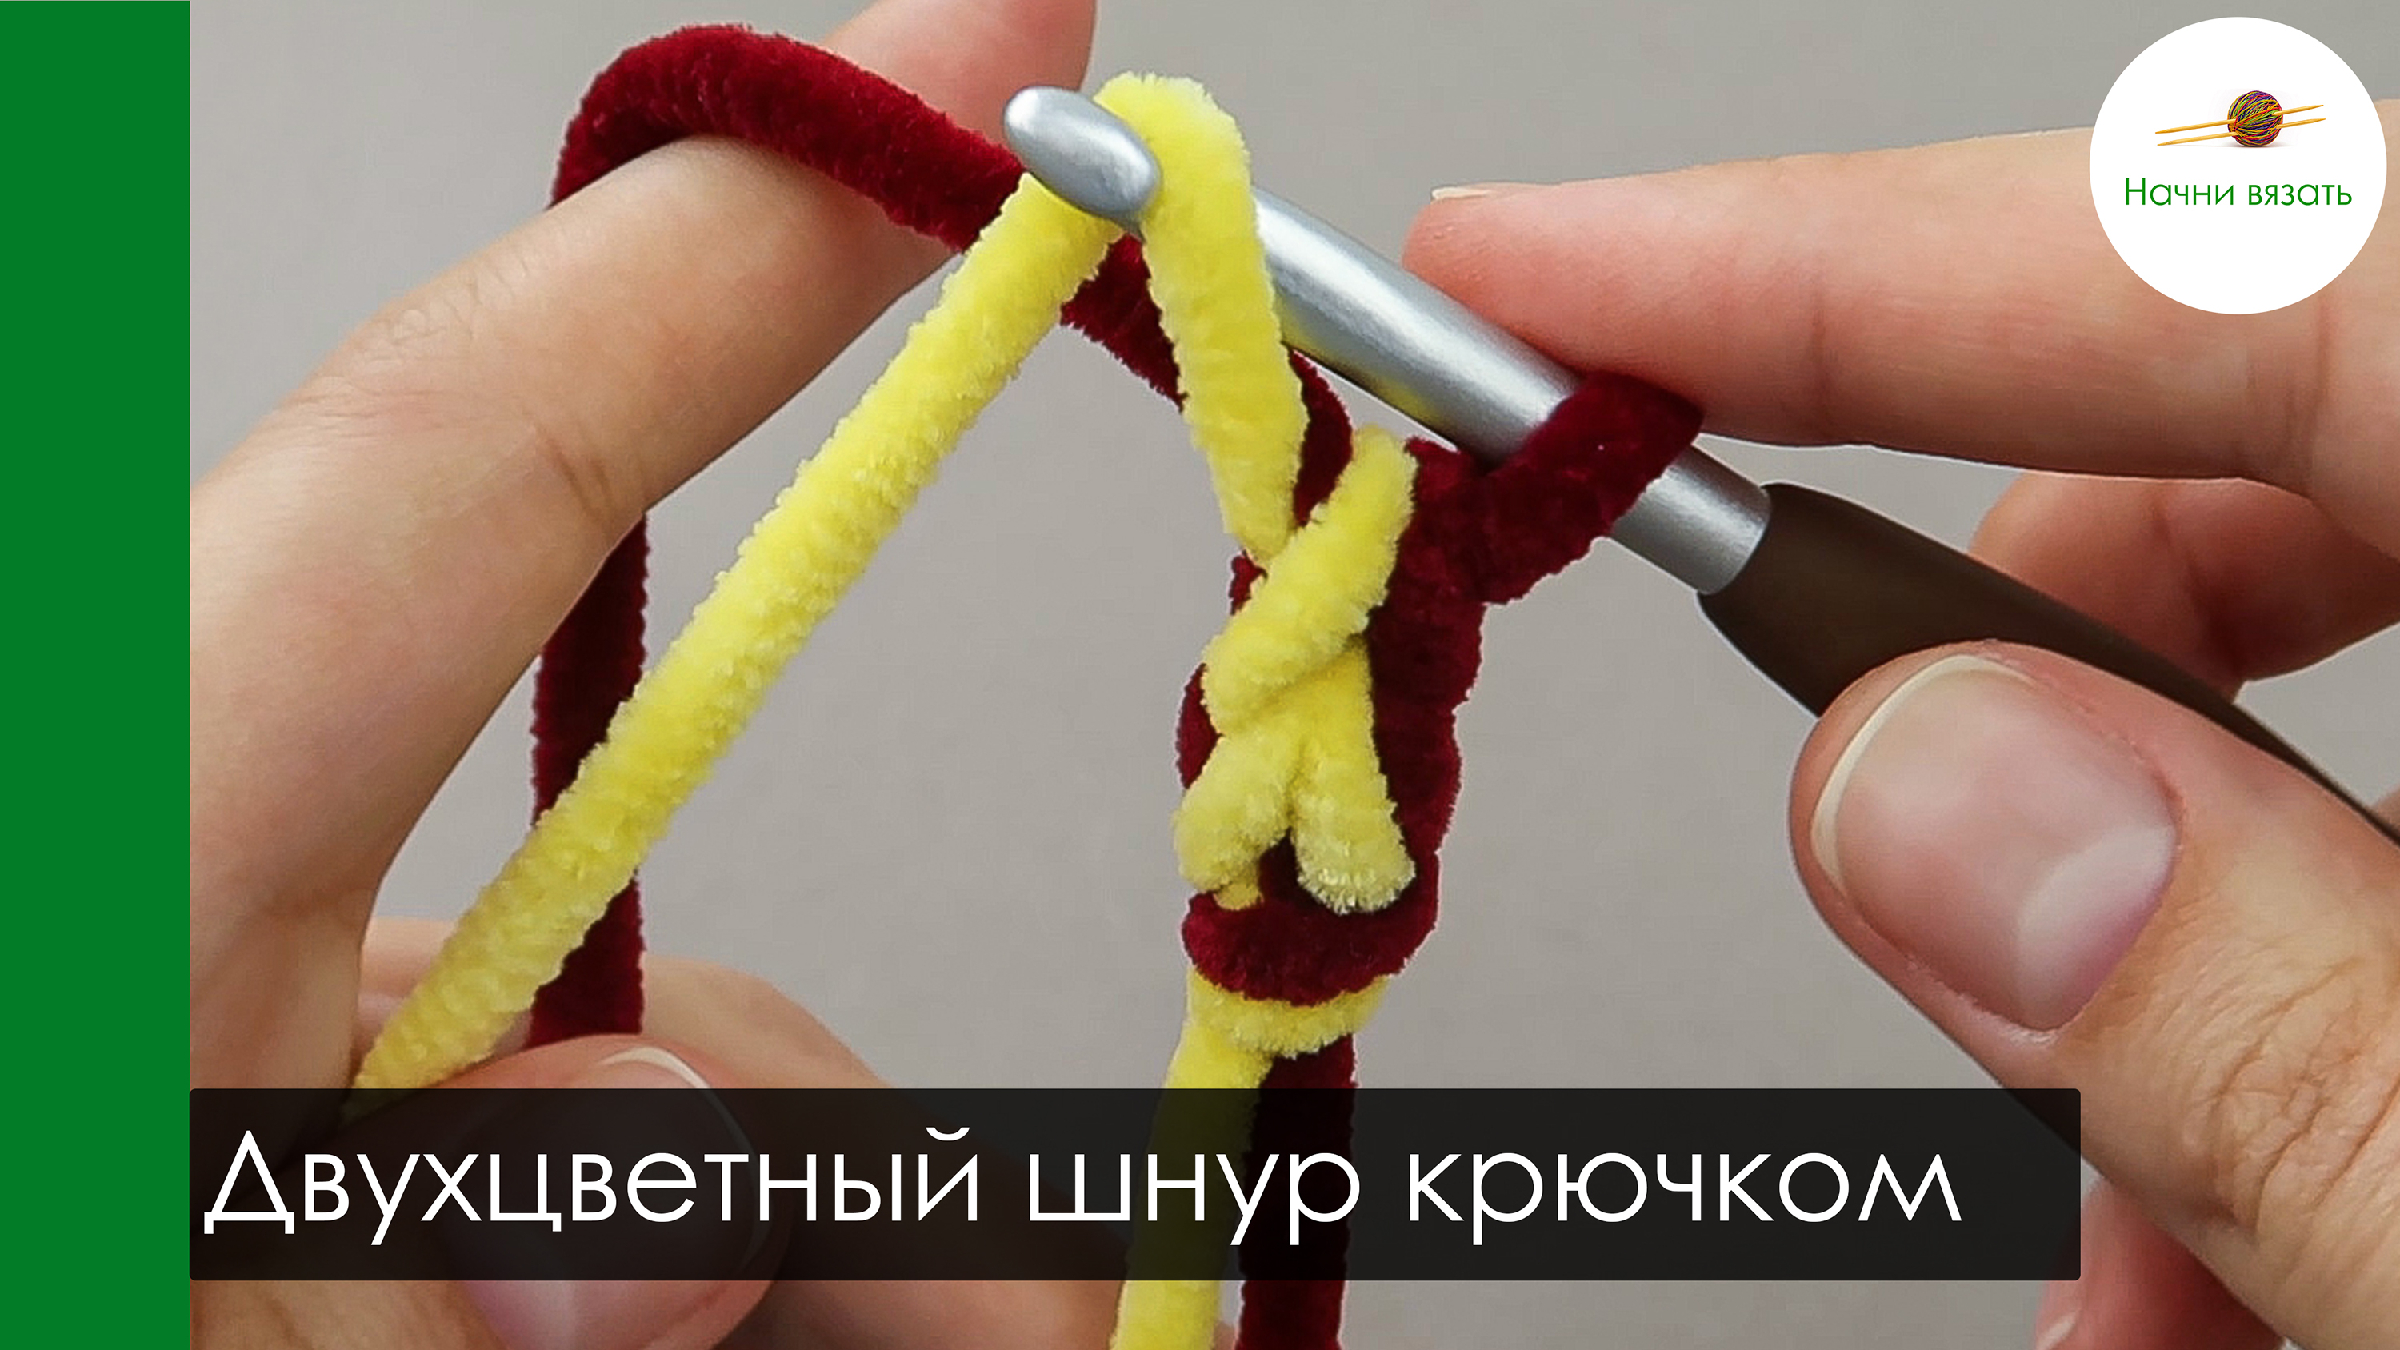 Шнур крючком: самая простая схема вязания. Изделия из вязаного шнура. Идеи применения в интерьере